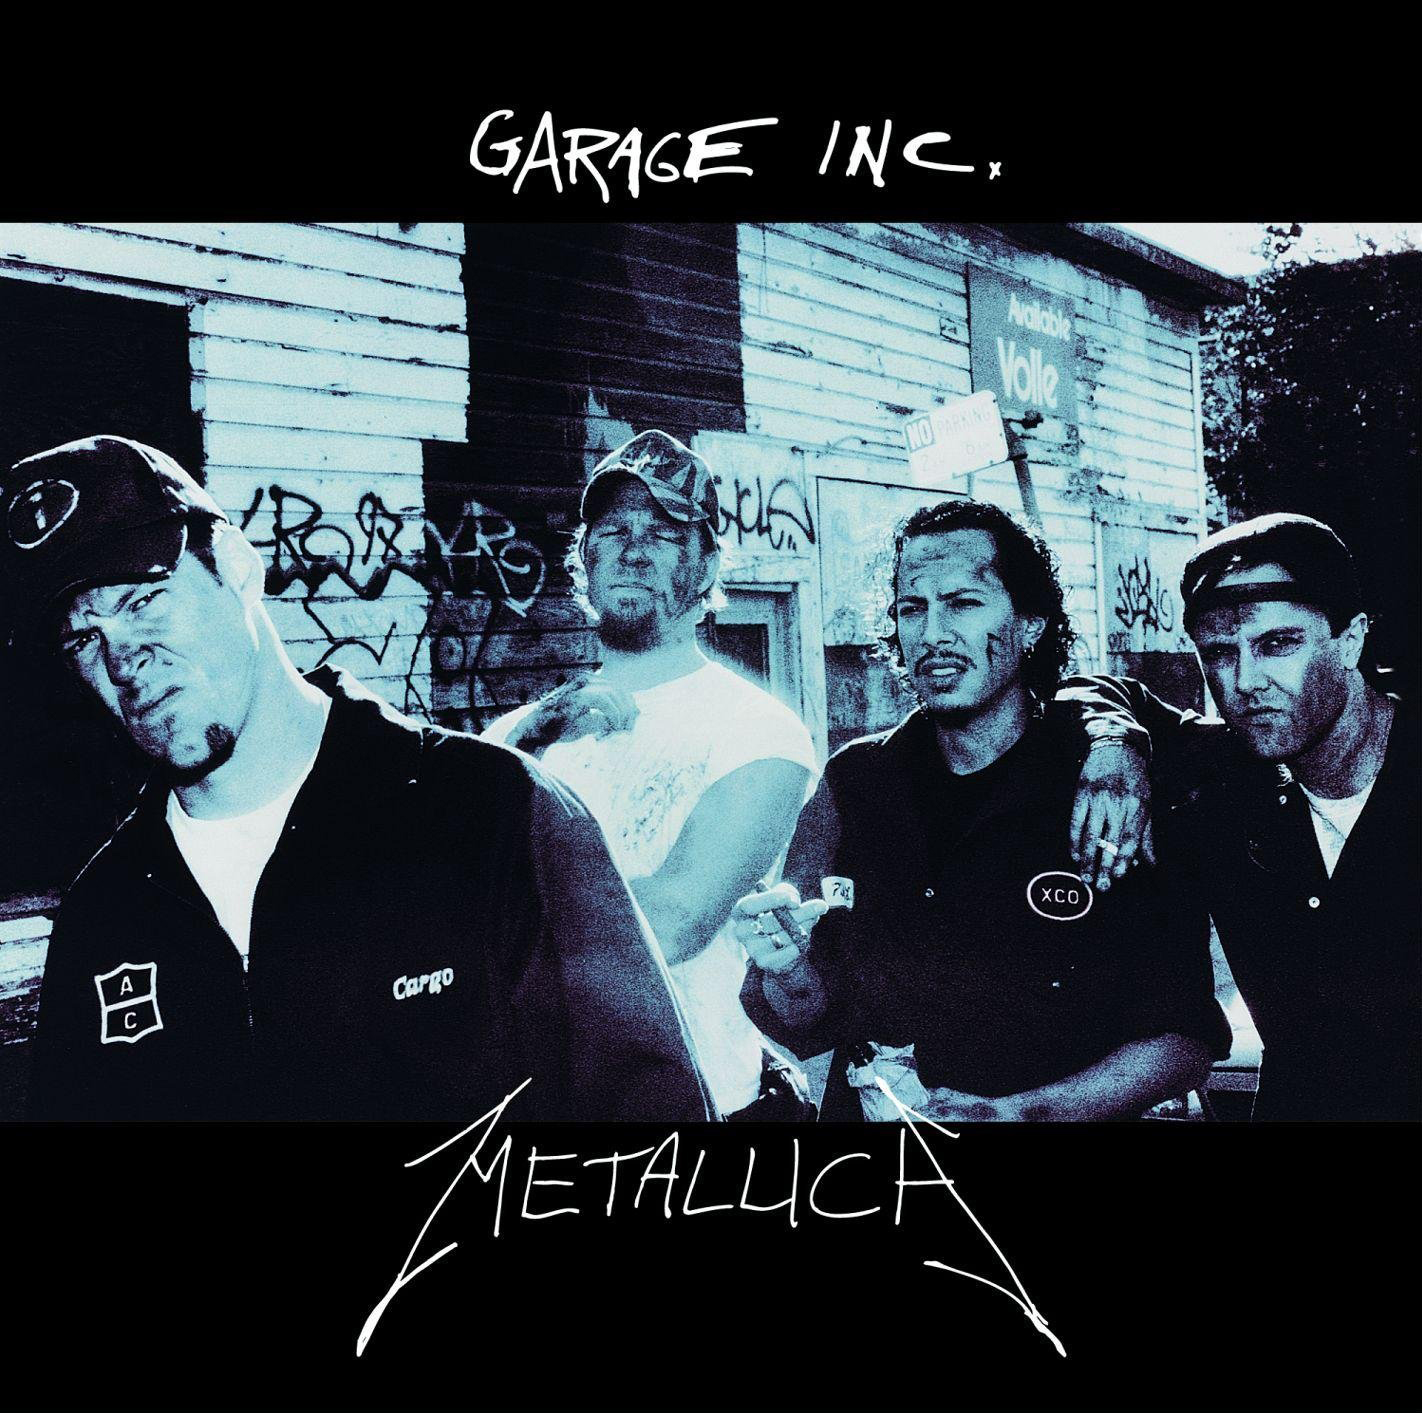 The Garage Interview (1998)